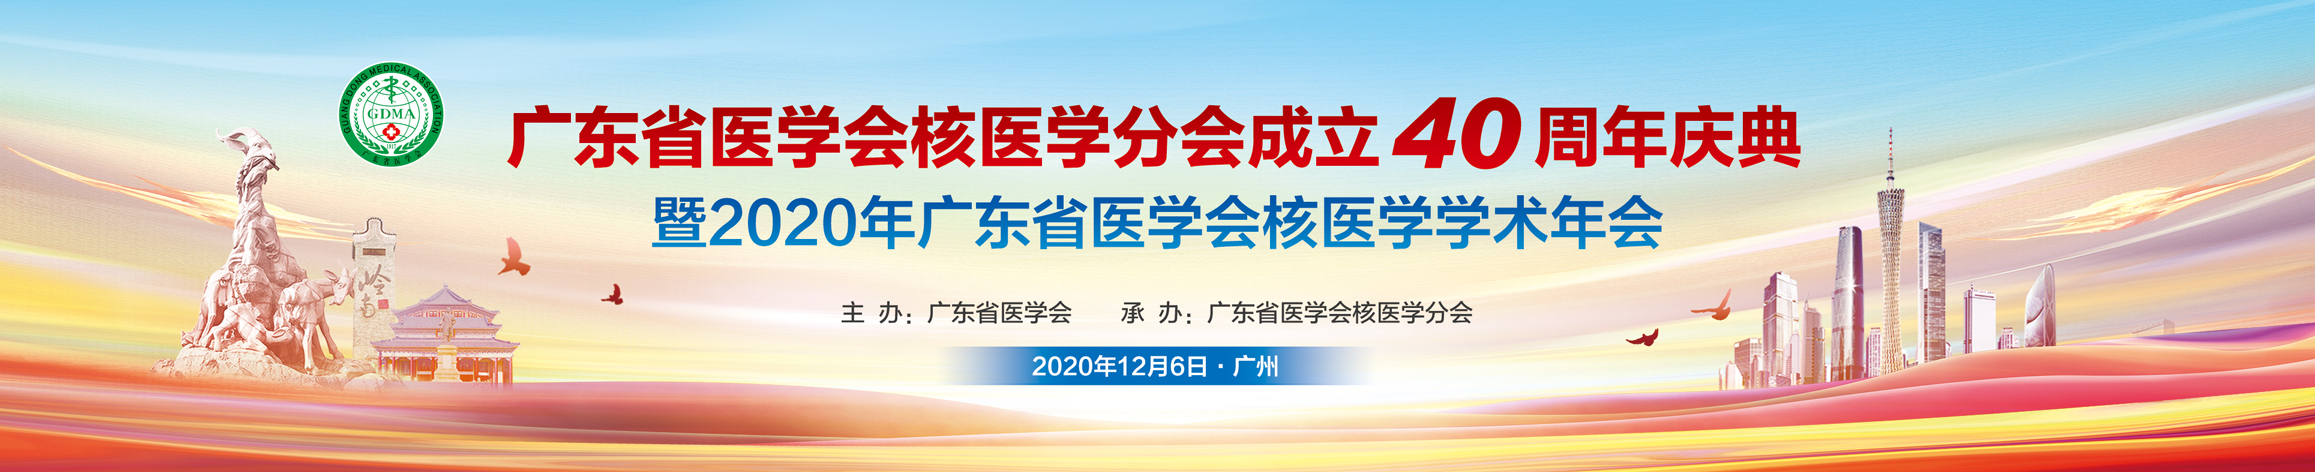 2020年广东省医学会核医学学术年会